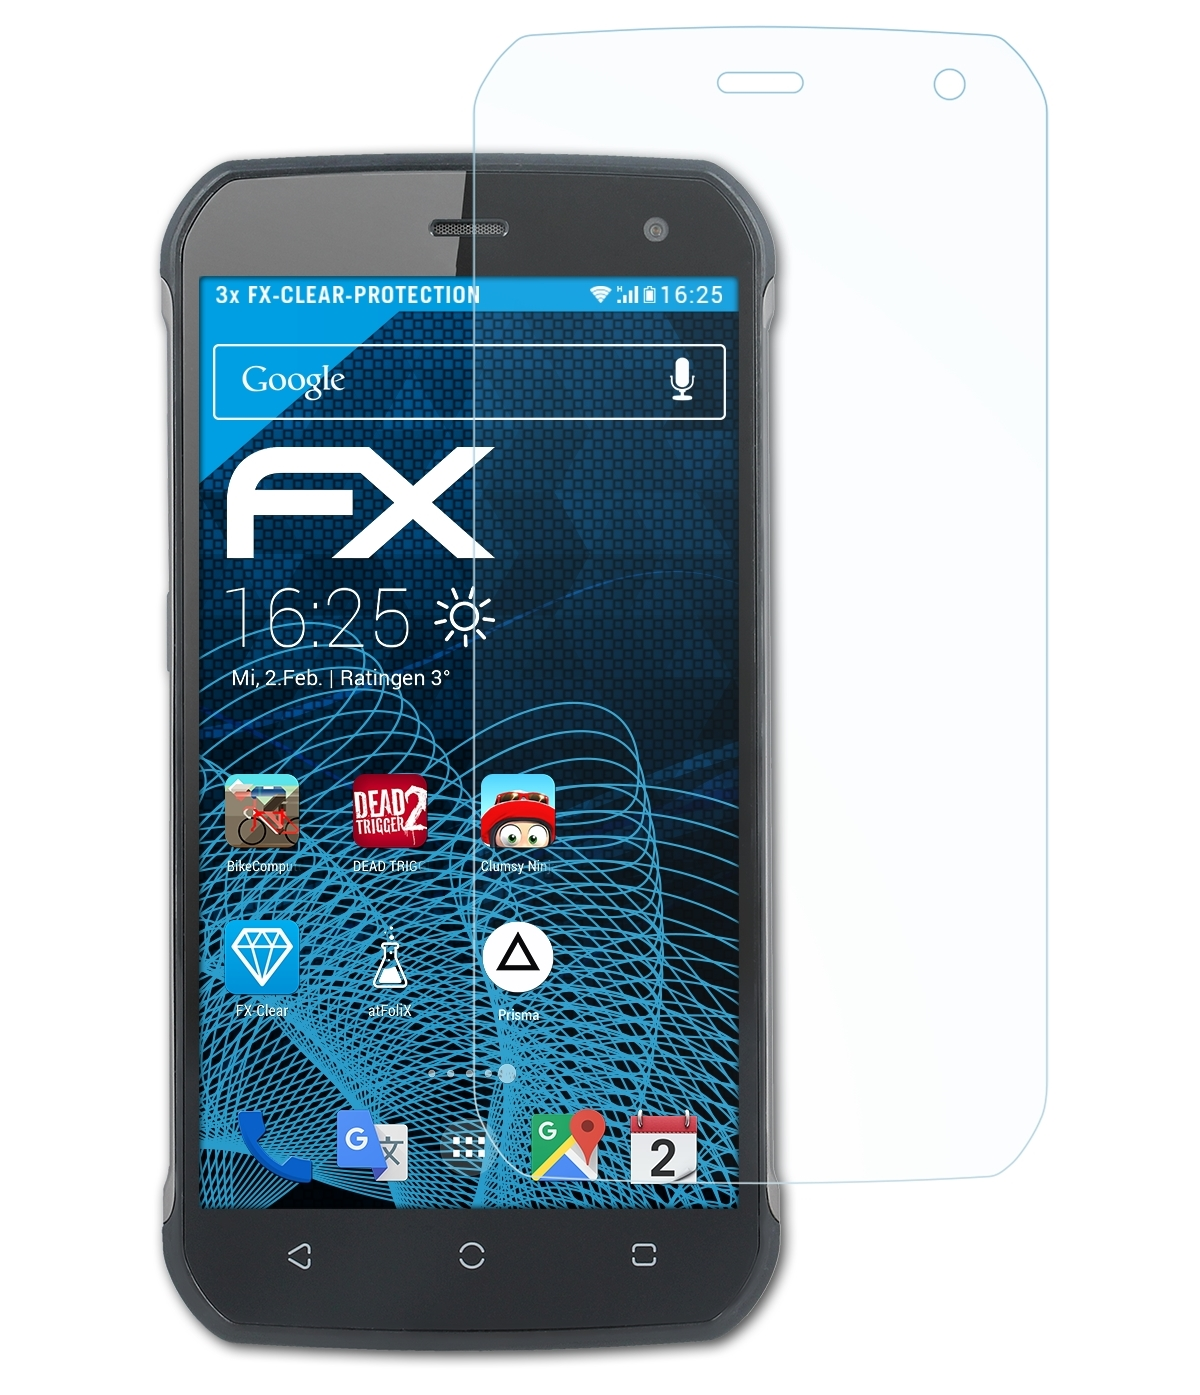 ATFOLIX 3x Displayschutz(für Hammer Blade) FX-Clear myPhone